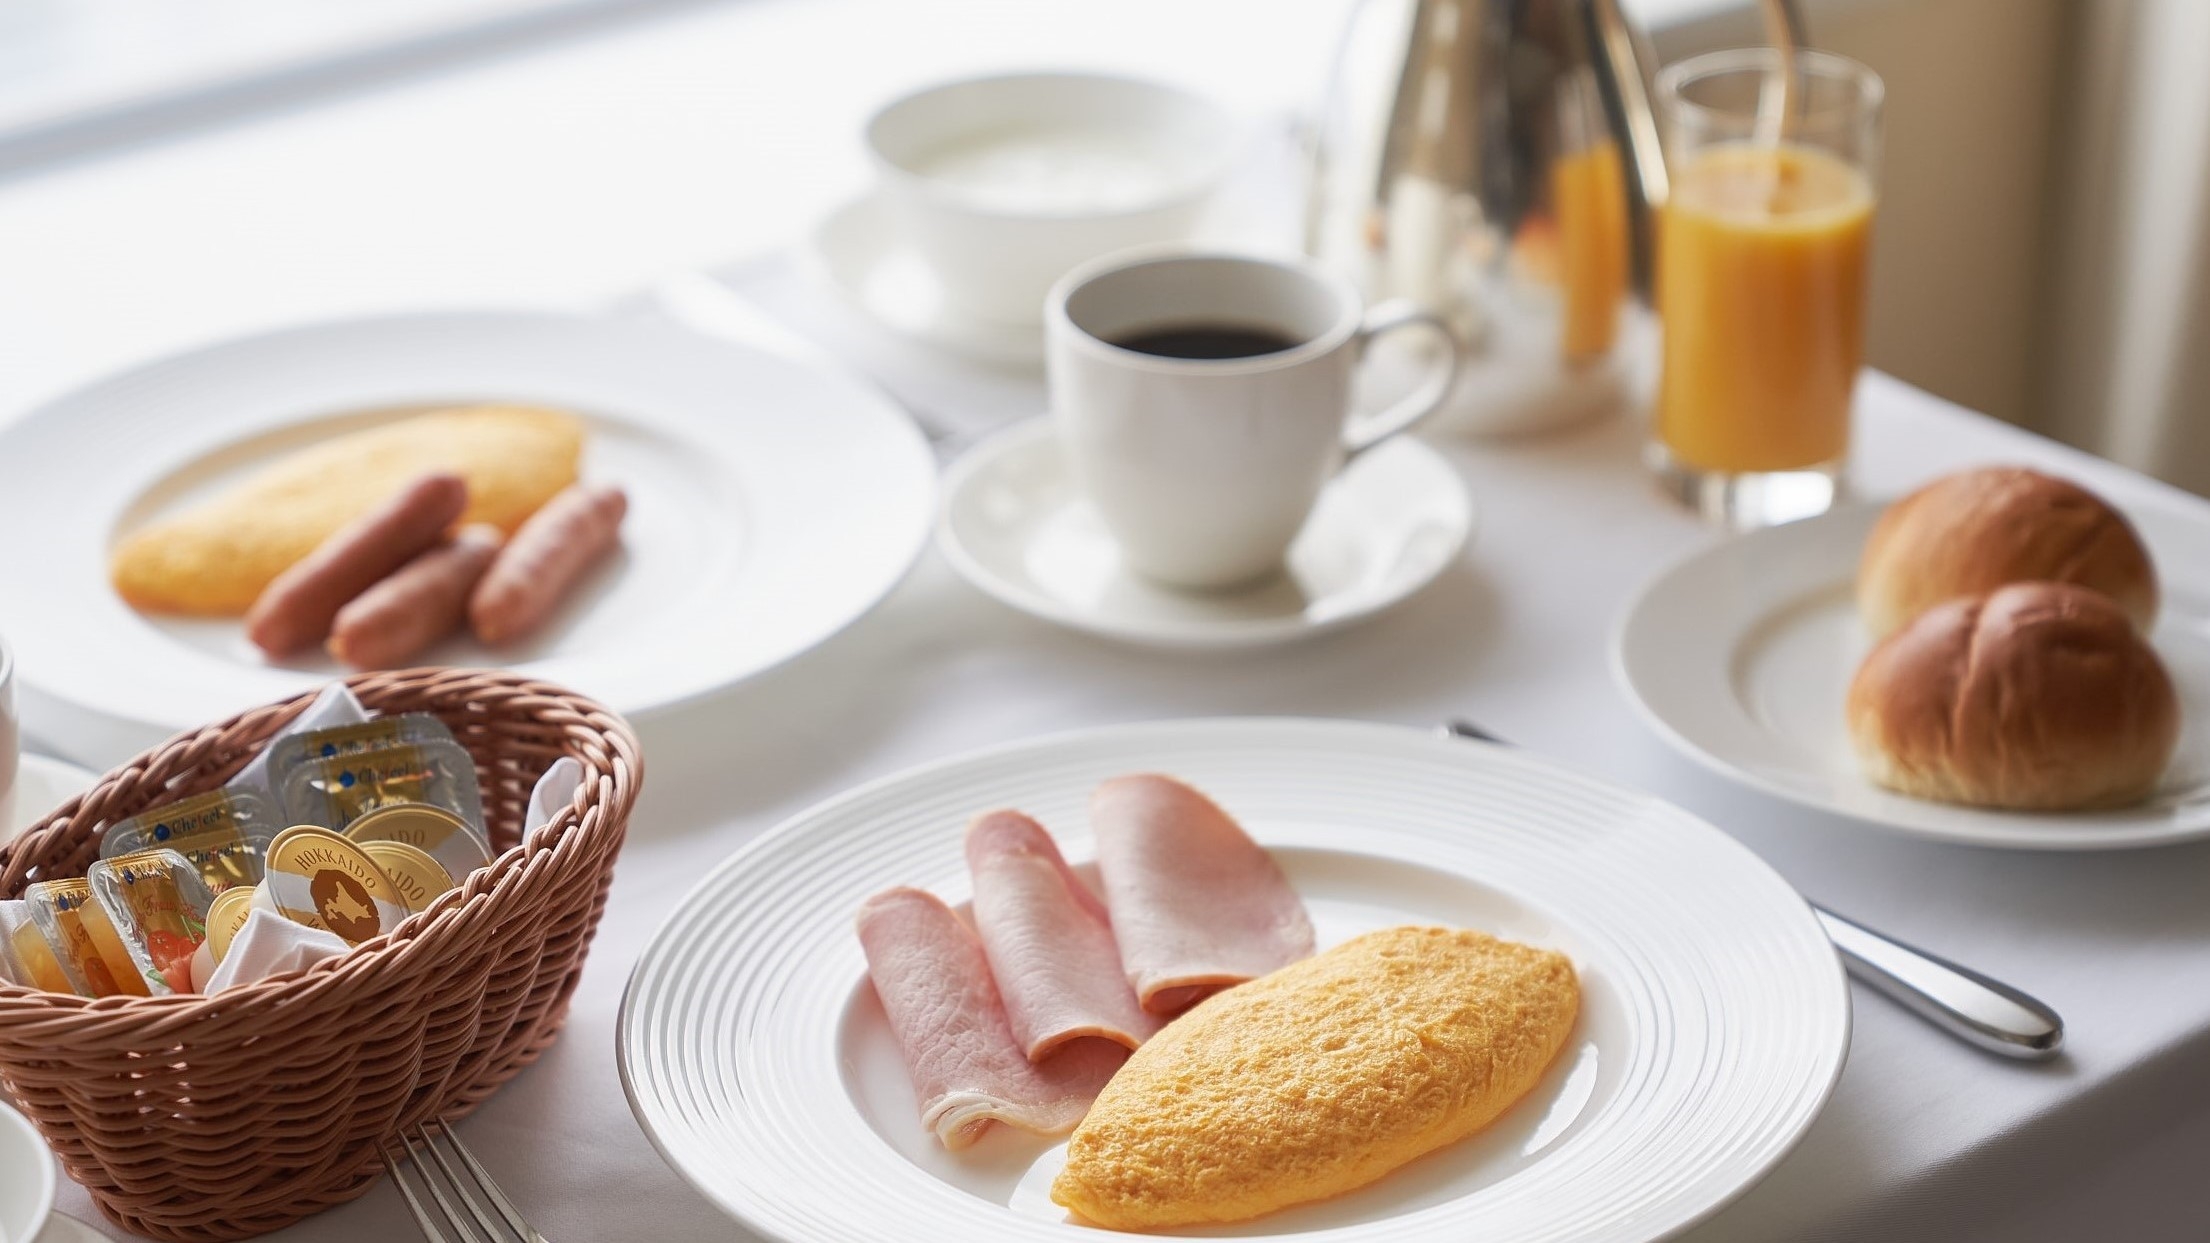 1日限定5室〜朝食は客室でゆったりと〜ルームサービスの朝食×12時レイトアウト付